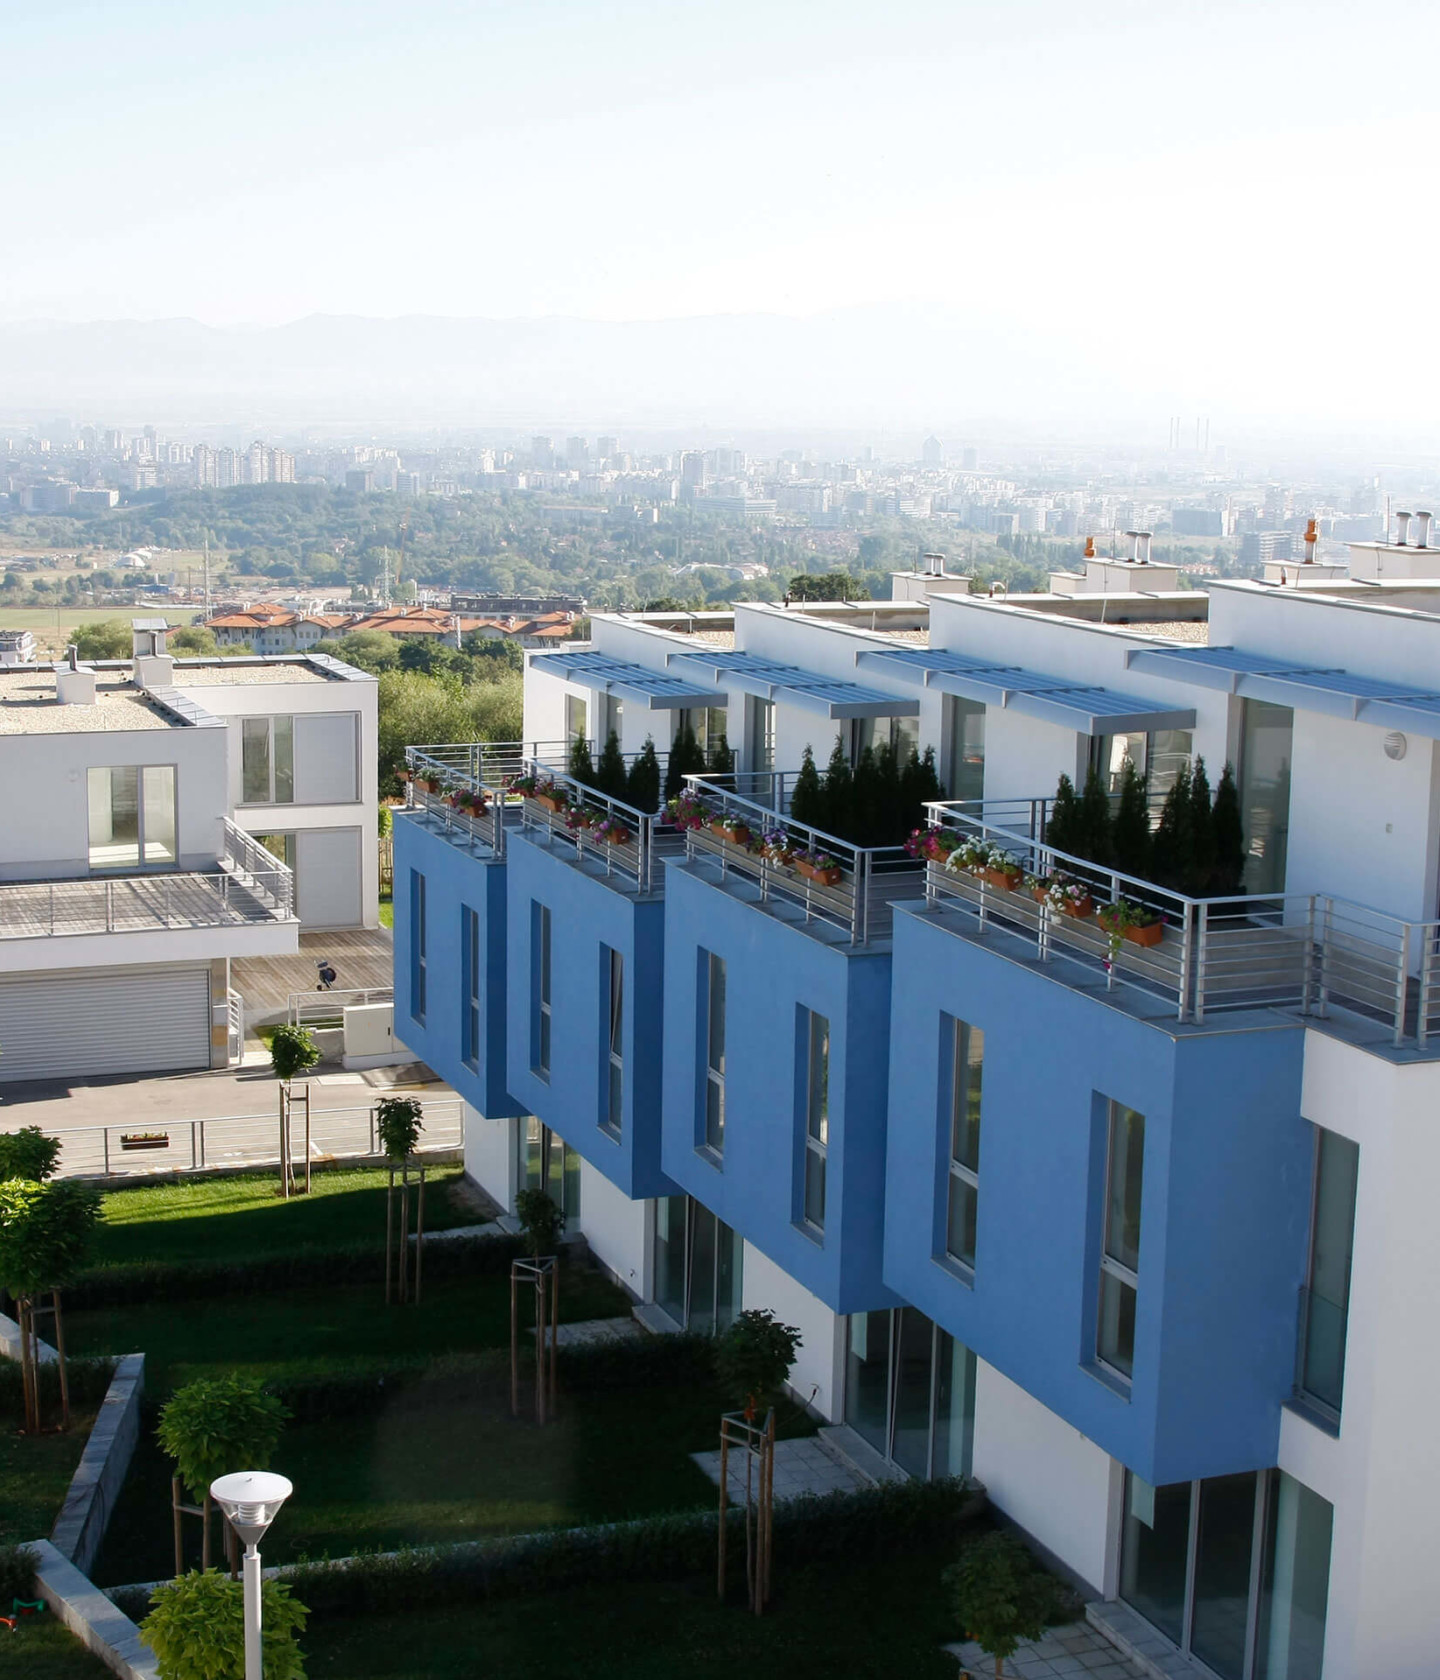 Foto: Mediteran gestaltete Wohnanlage Sky Sofia mit begrünten Gärten